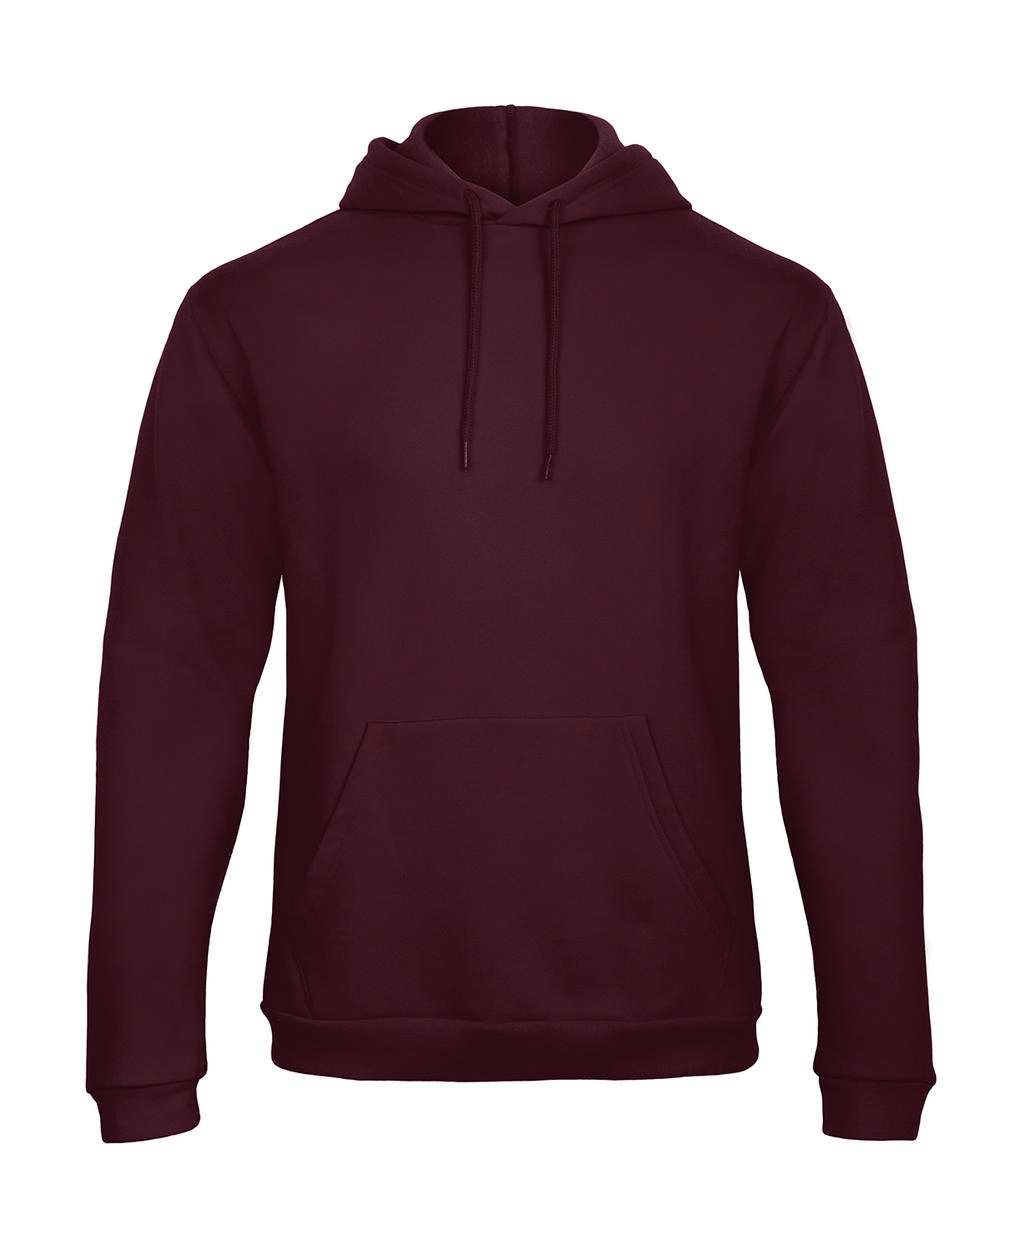 ID.203 50/50 Hooded Sweatshirt Unisex  zum Besticken und Bedrucken in der Farbe Burgundy mit Ihren Logo, Schriftzug oder Motiv.